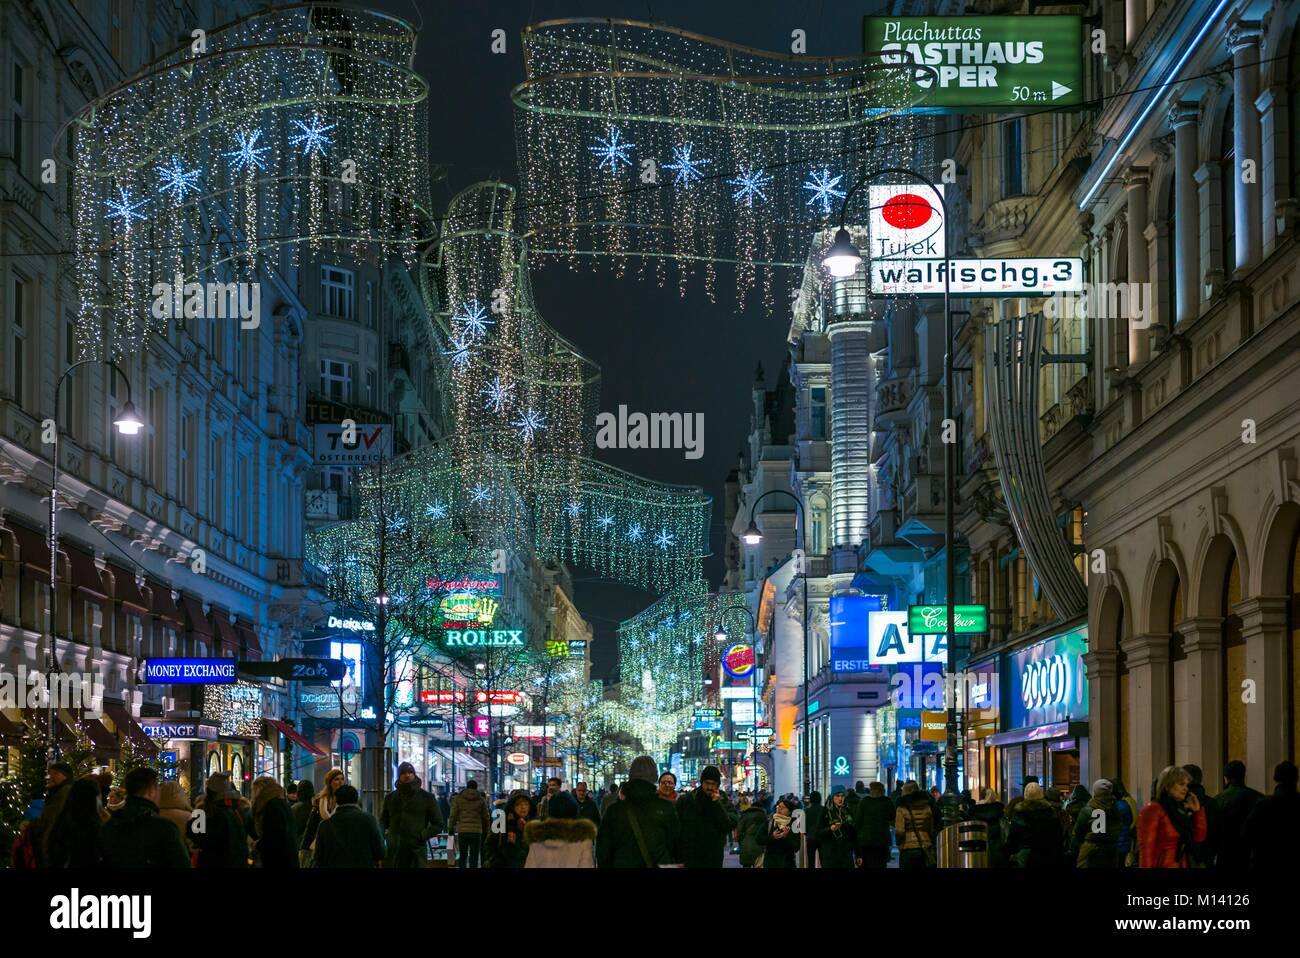 Austria, Viena, Kartnerstrasse calle de tiendas, decoraciones de Navidad, Noche Foto de stock